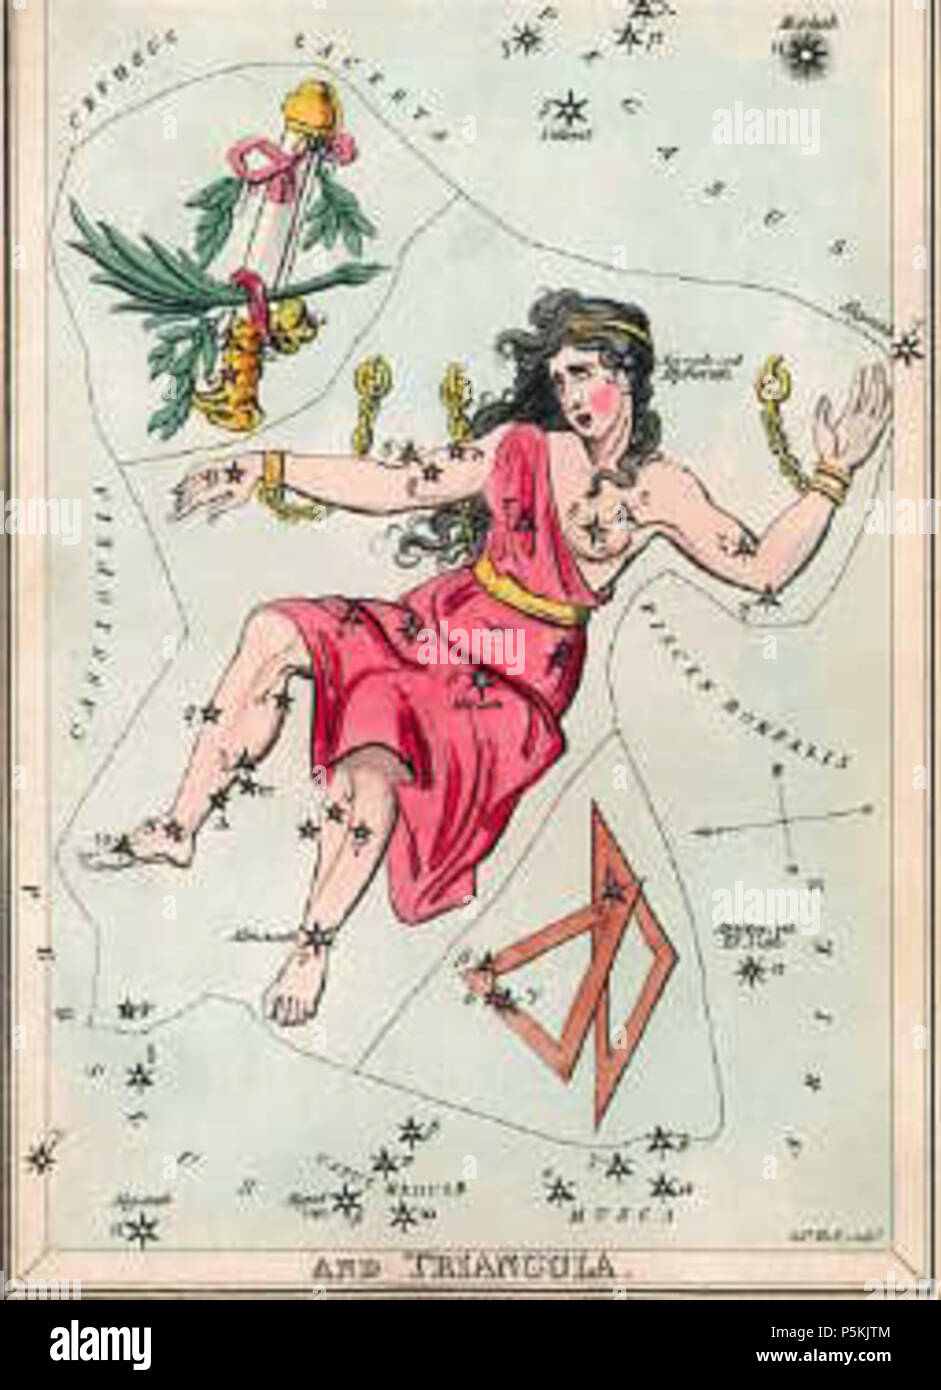 N/A. Englisch: Andromeda wie in Urania's Mirror, ein sternbild Karten in London c. veröffentlicht dargestellt 1825. Vorlage:Portal:Star/ausgewählte Bild/Vorlage. 18. Mai 2009 (original Upload Datum). Die ursprünglichen Uploader wurde Urania's Muse auf Englisch. 100 Andromedaurania Stockfoto